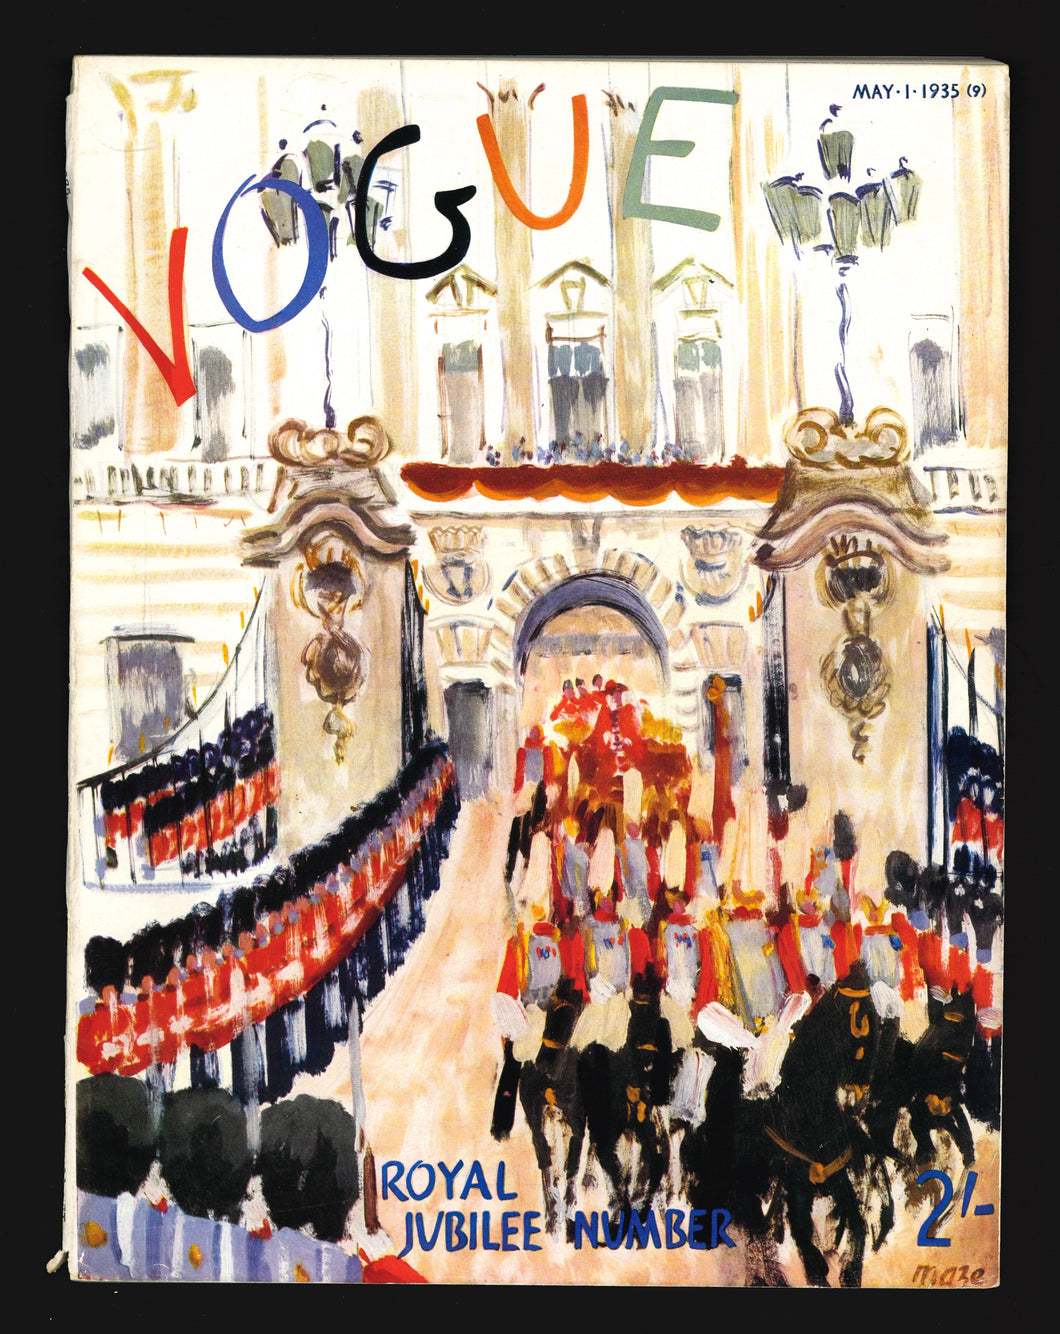 Vogue UK May 1 1935